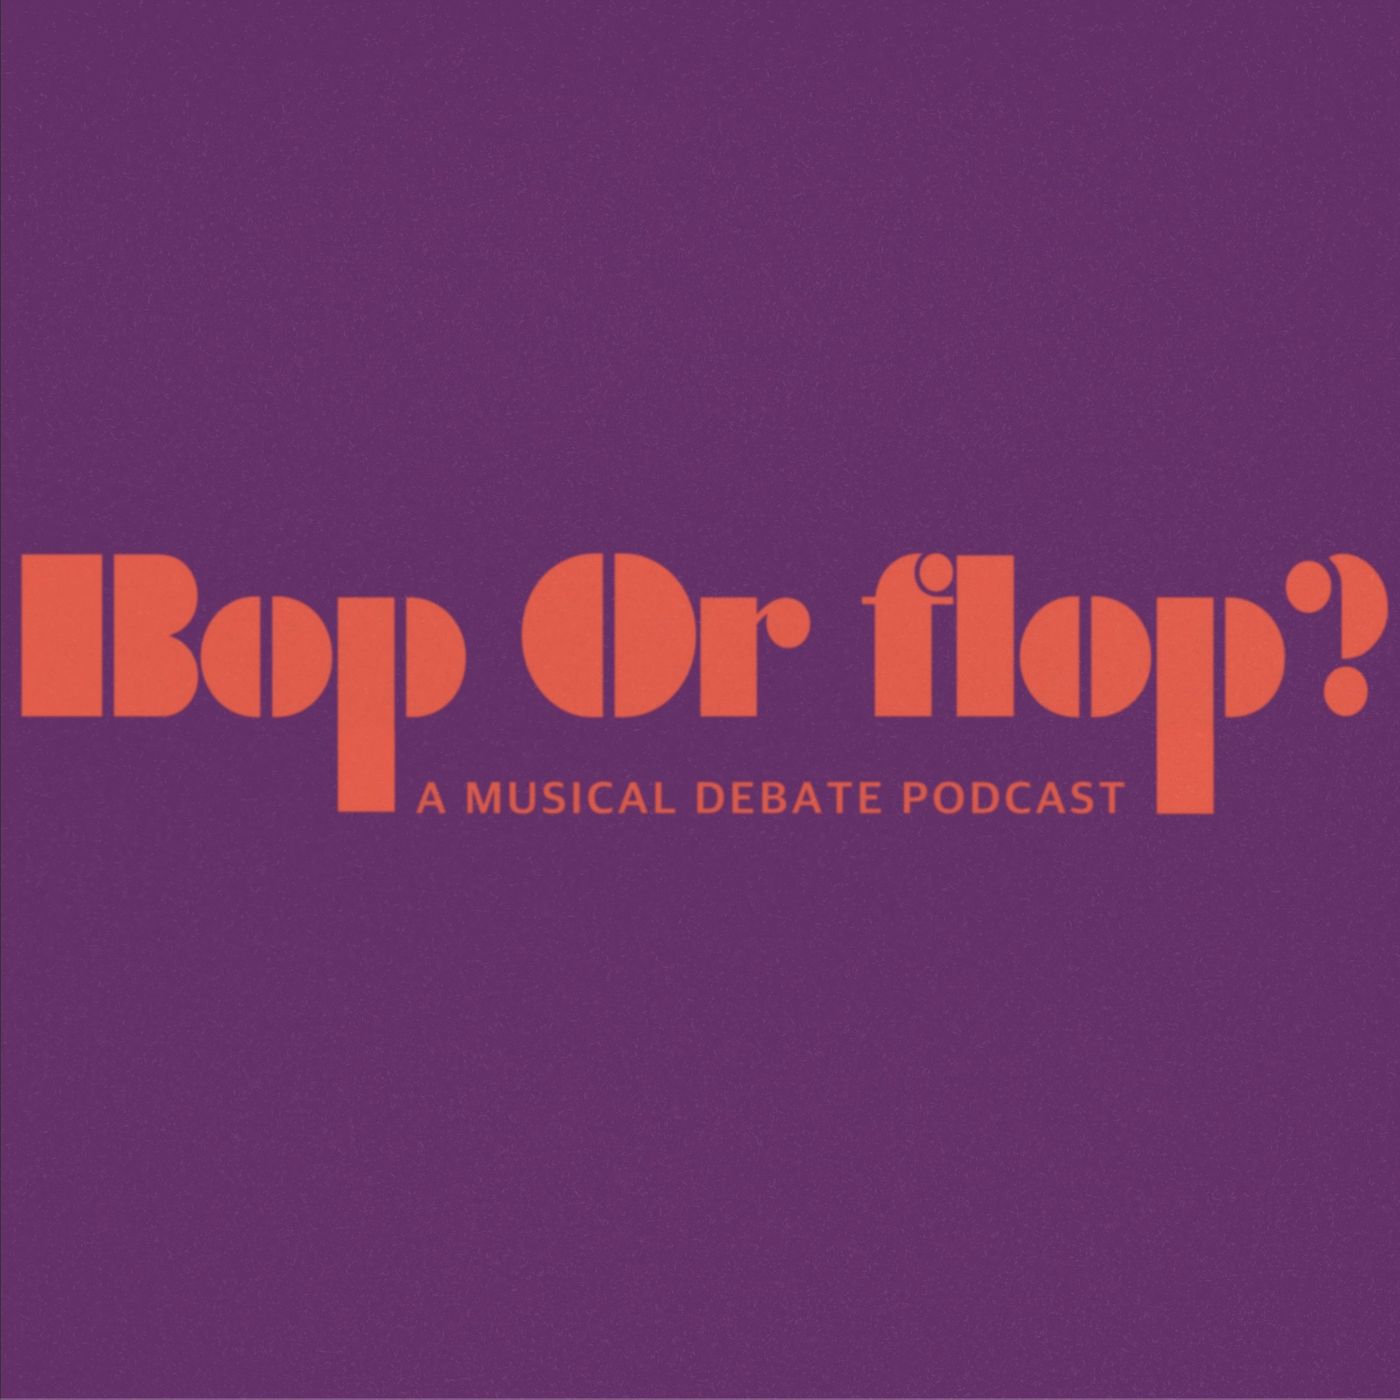 Bop or Flop?